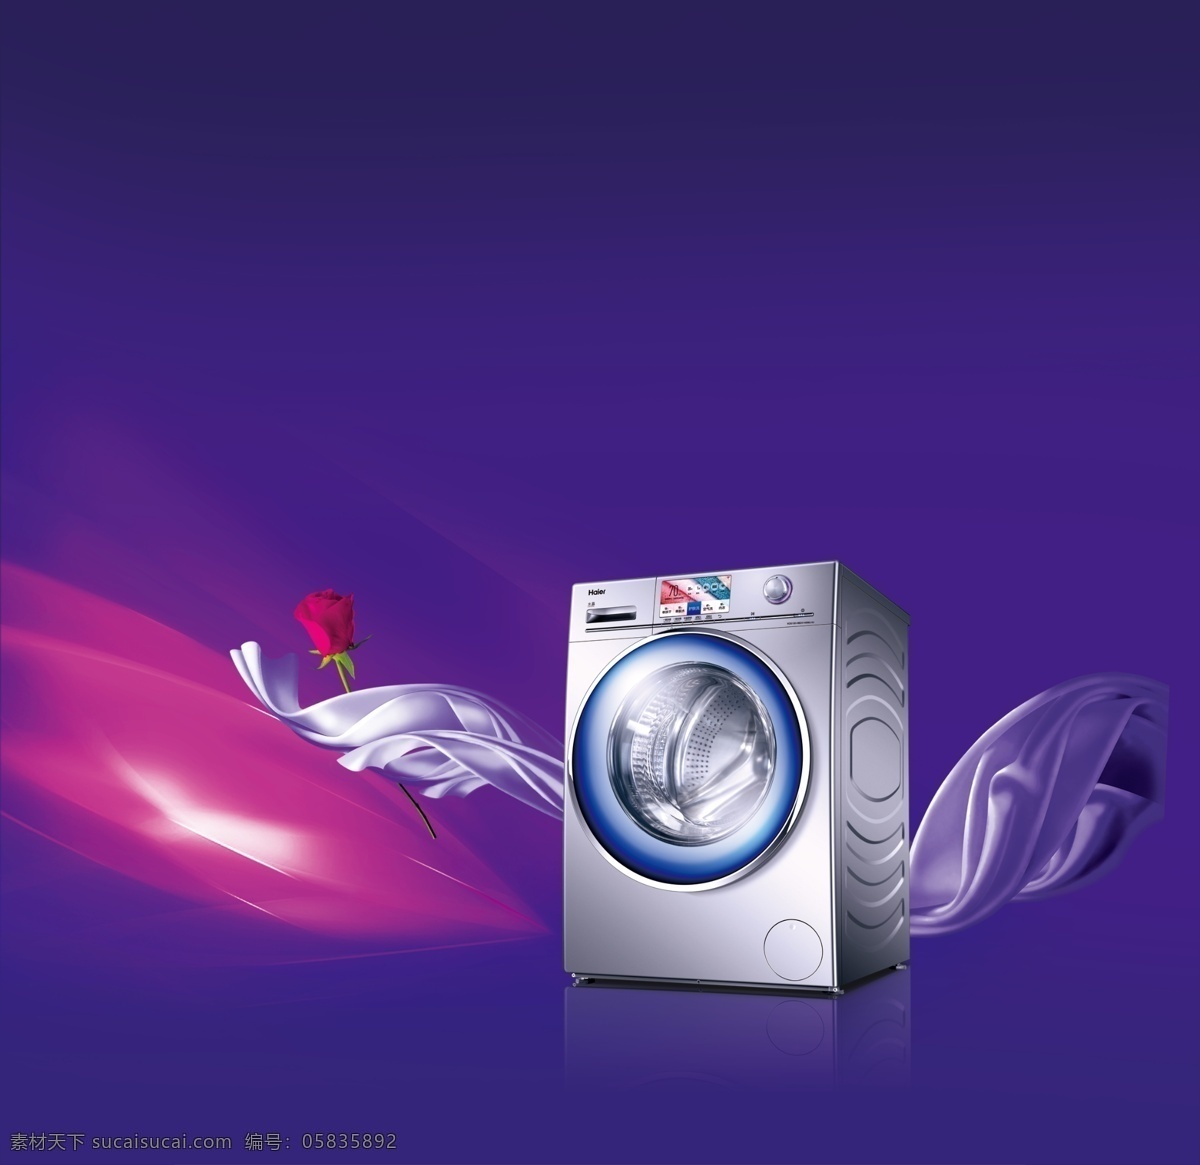 海尔 洗衣机 大 海报 背景 分层 大海报 紫水晶 蓝色